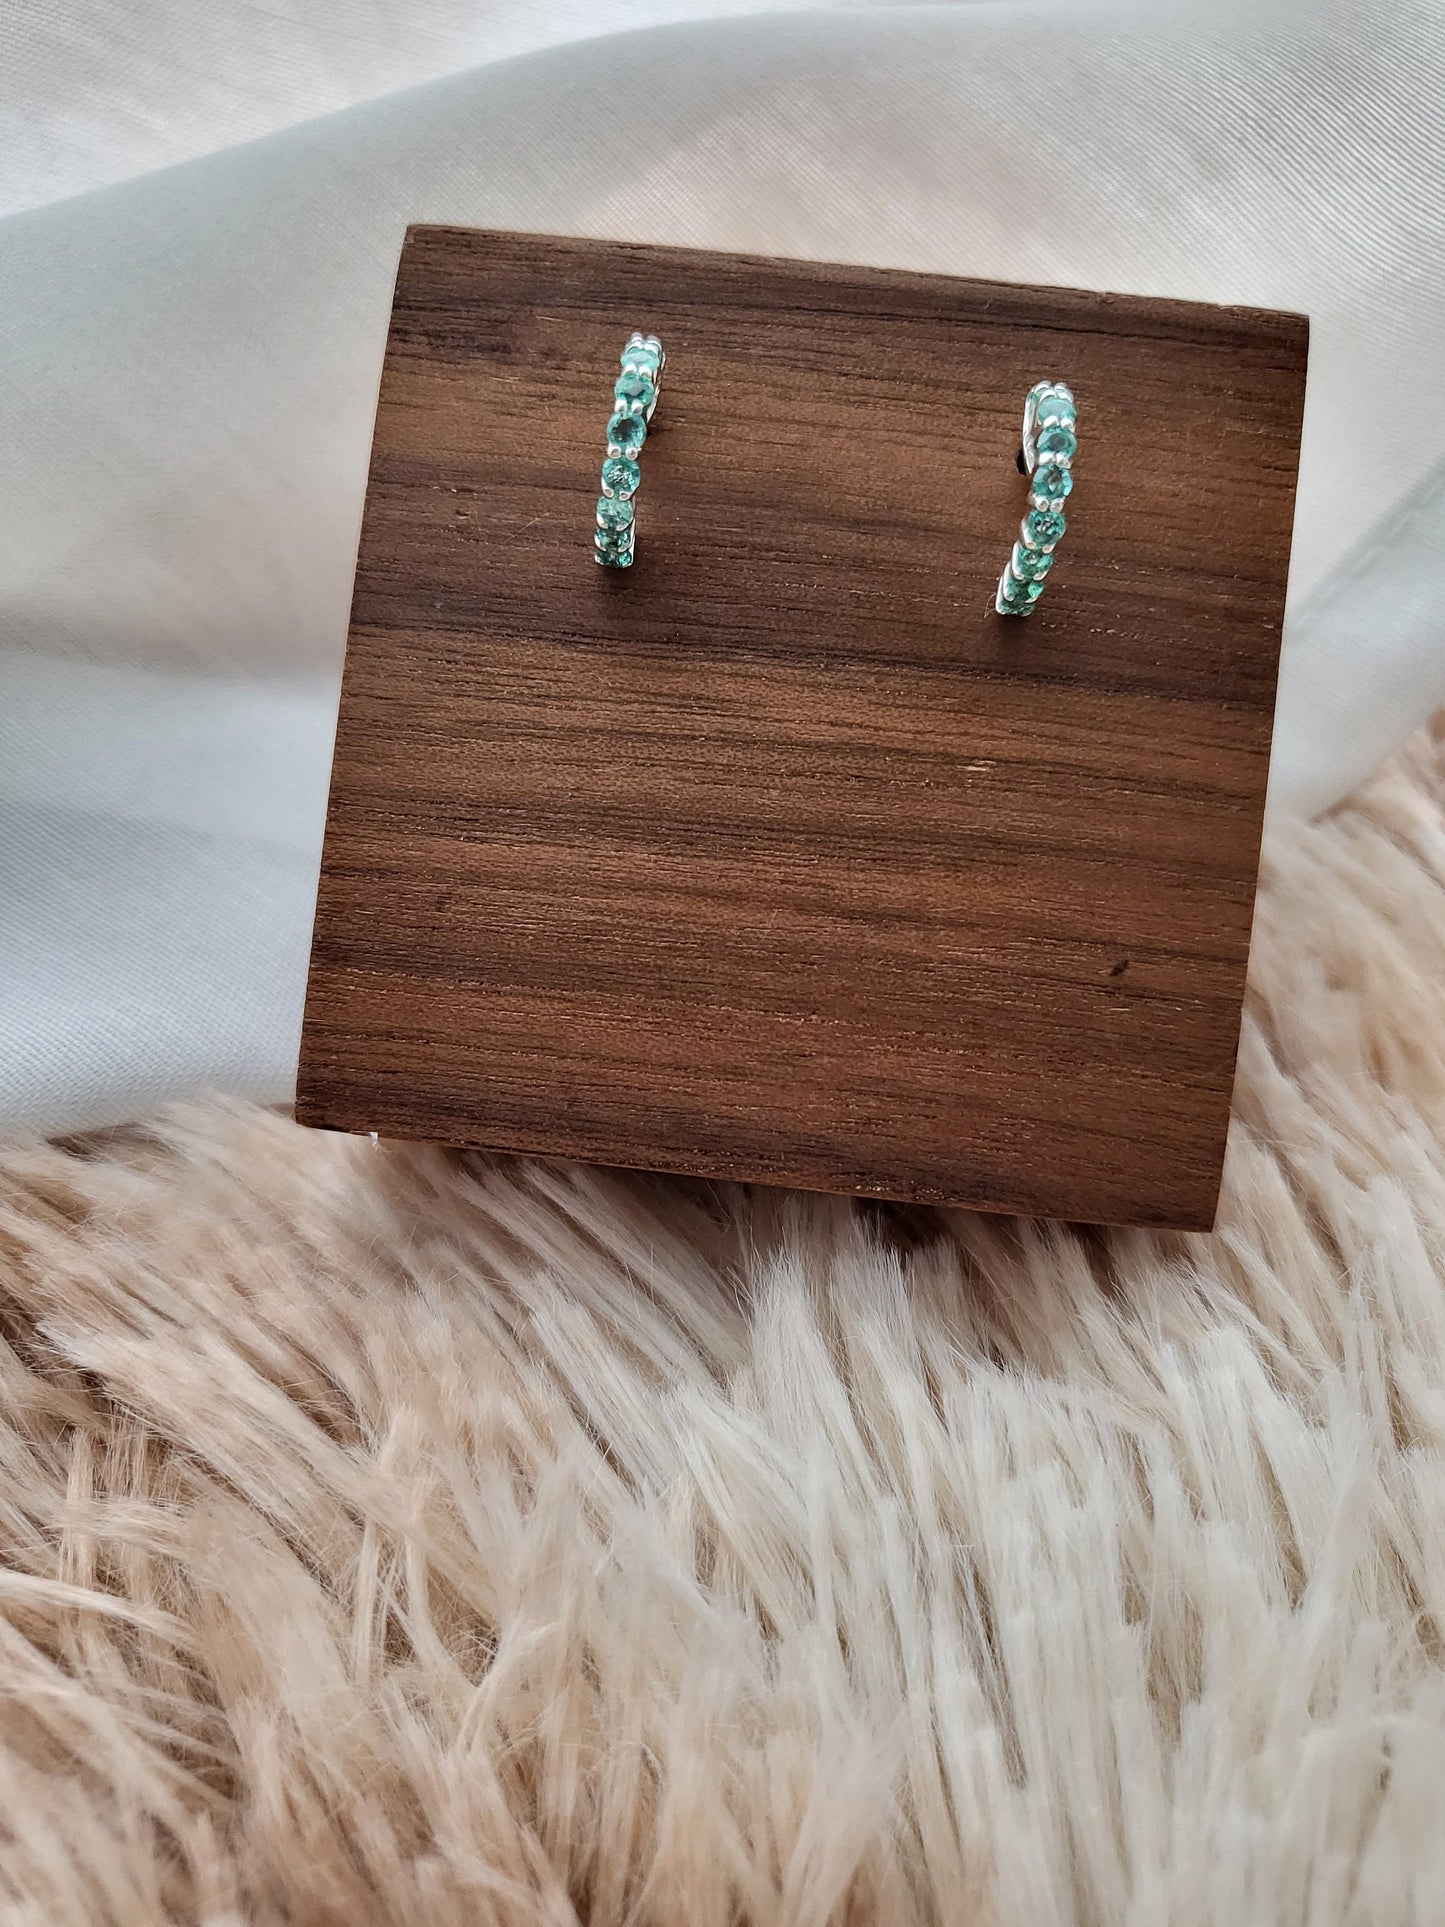 Natural Emerald Gemstone Earrings Hoop Stud Silver Earrings